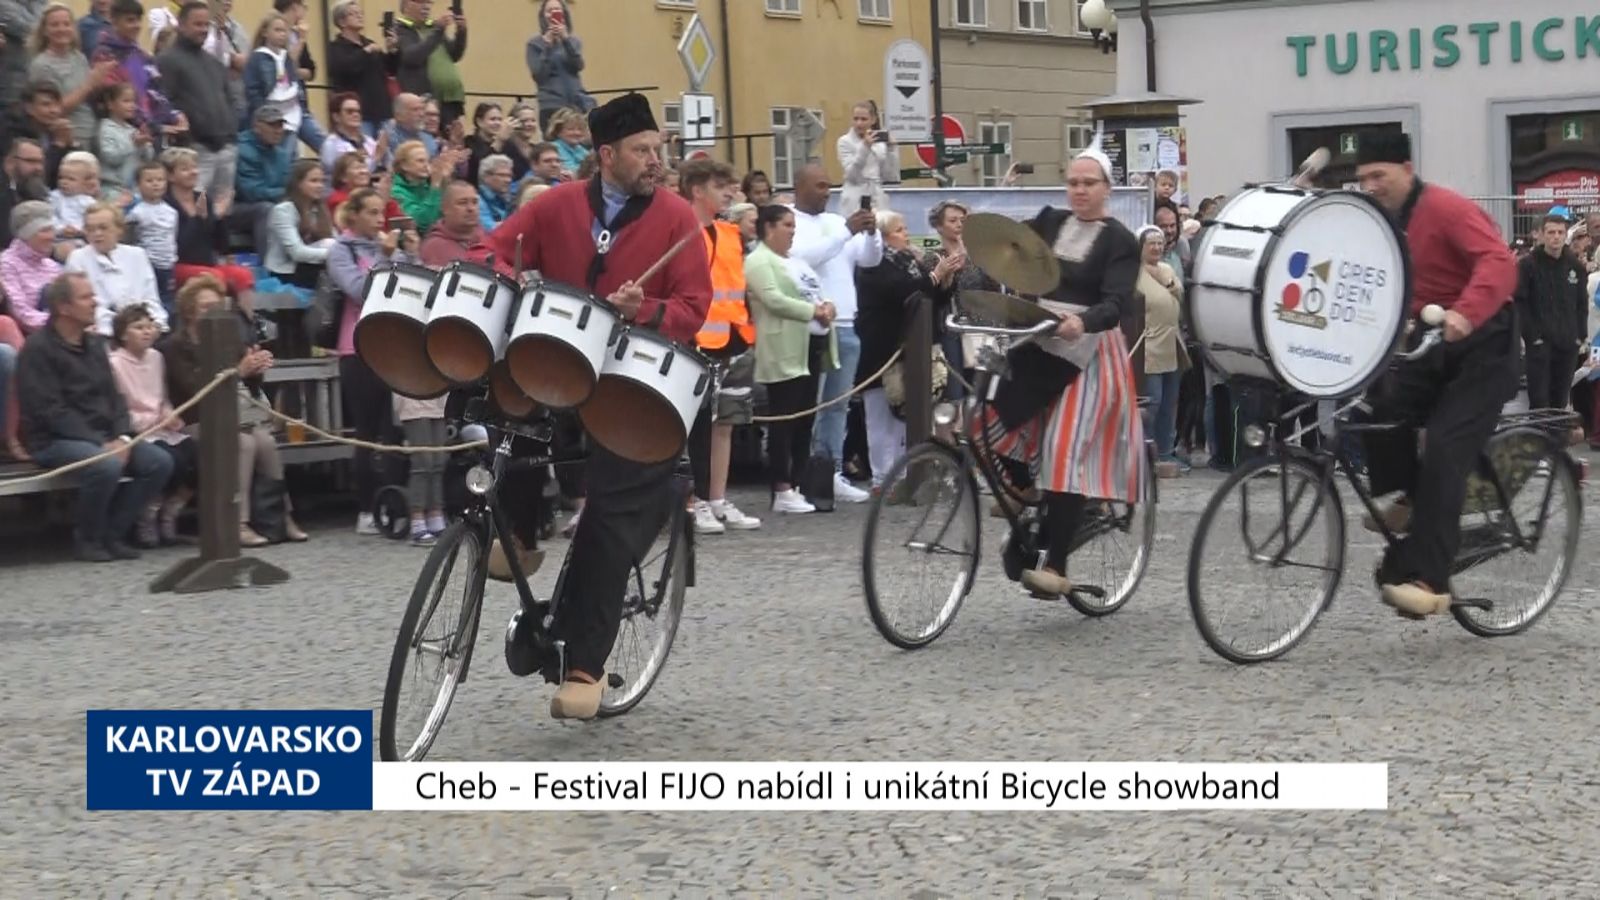 Cheb: Festival FIJO nabídl i unikátní Bicycle showband (TV Západ)